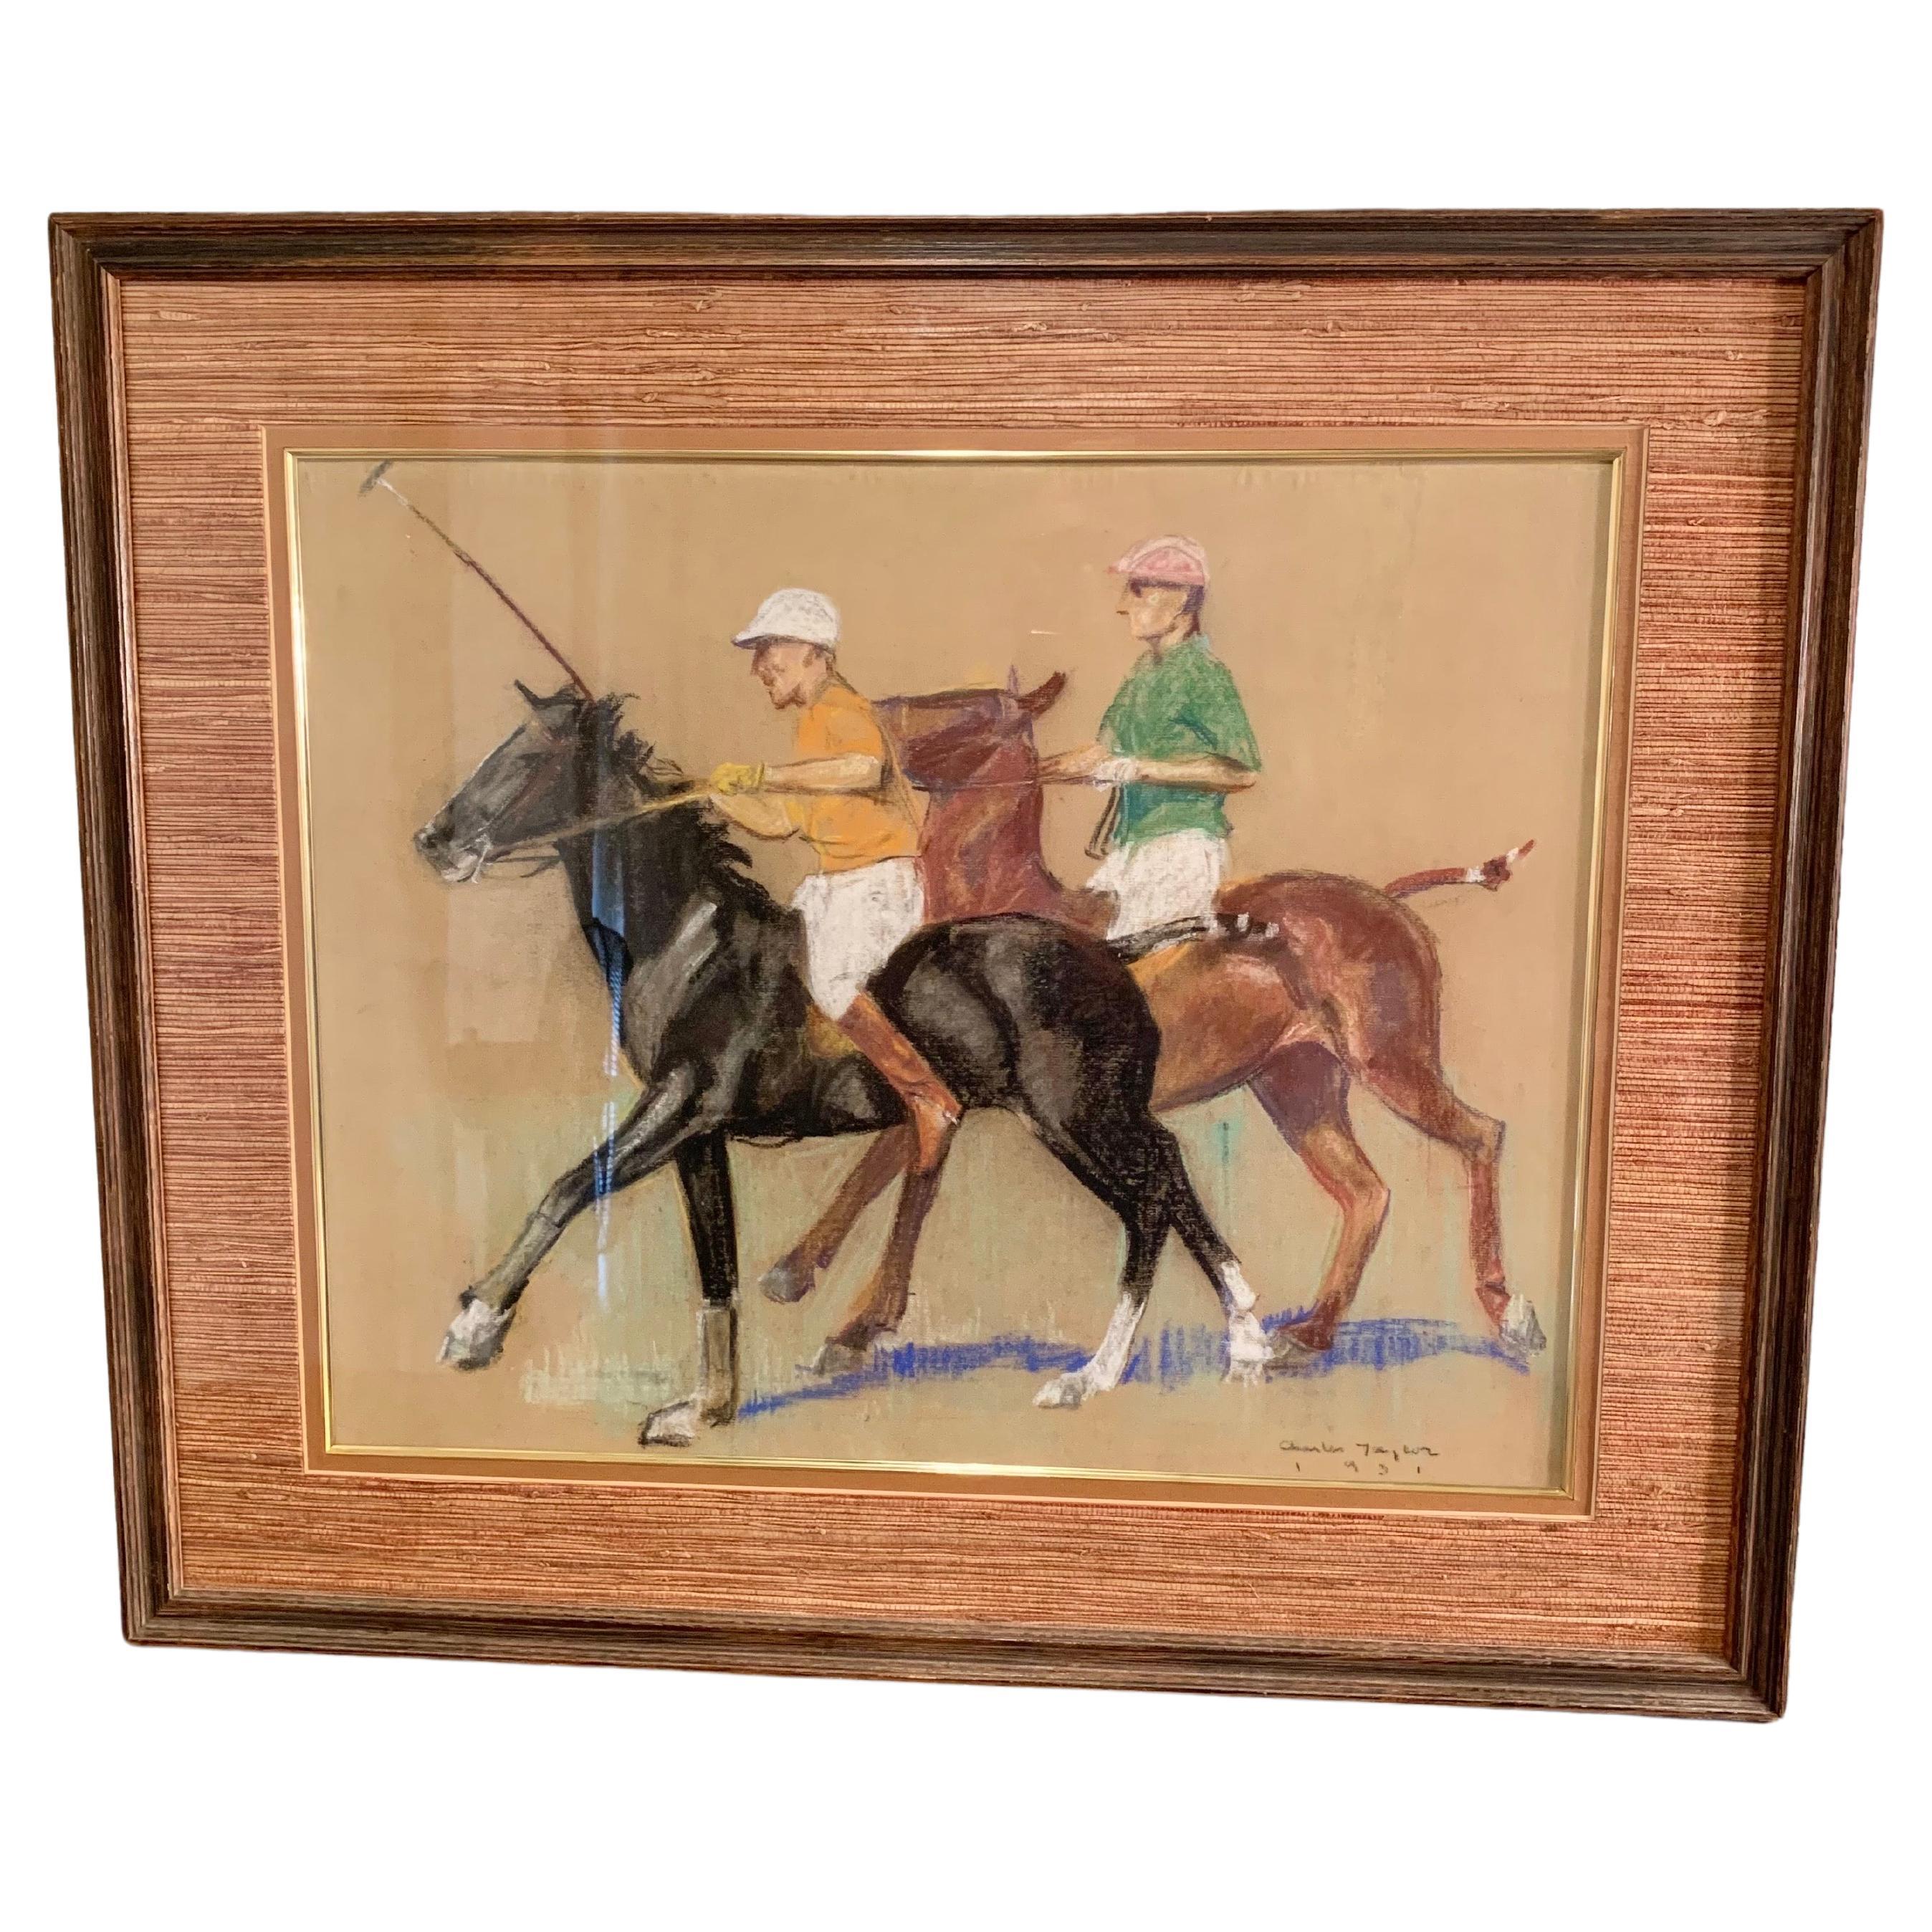 Diese originelle Pastell- und Buntstiftzeichnung aus dem frühen 20. Jahrhundert zeigt zwei Polospieler auf galoppierenden Vollblütern. Das in Grün-, Blau-, Weiß-, Gelb-, Braun- und Schwarztönen gehaltene Werk ist in der rechten unteren Ecke signiert